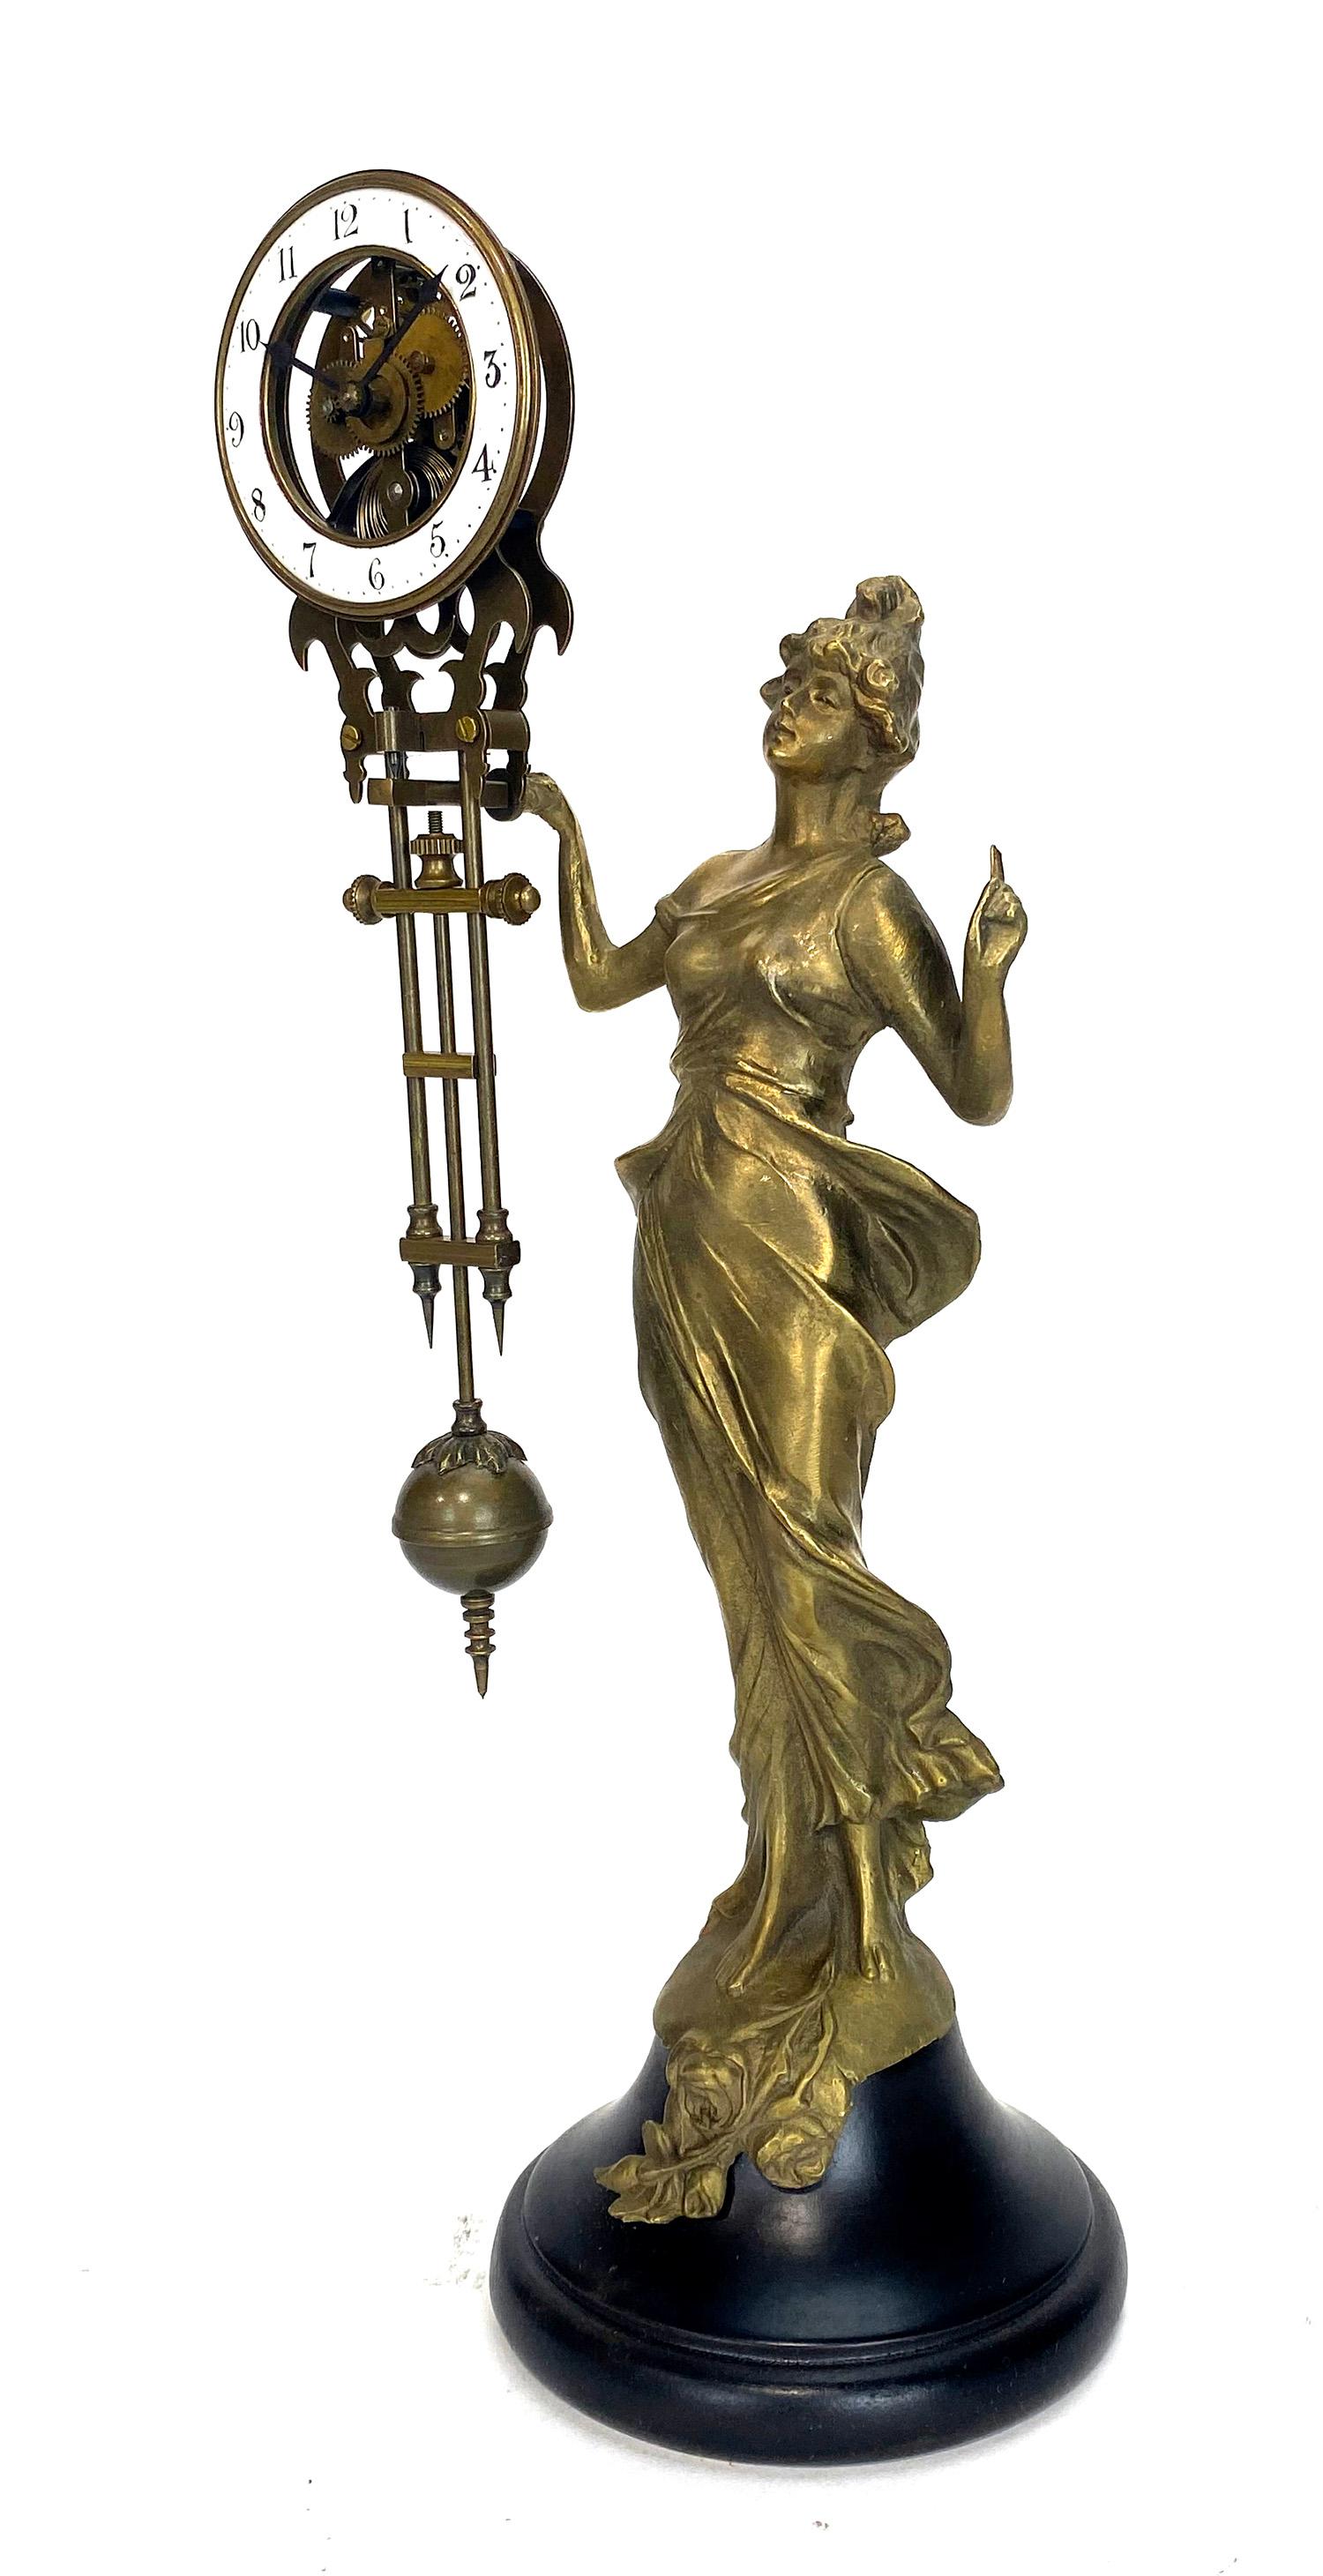 Mystery Diana Swinging Swinger Uhr mit 8 Tage Skelett Uhrwerk

Massivem Messing gegossen Dame Diana Statue mit einem Holzsockel. Handbemalter 2